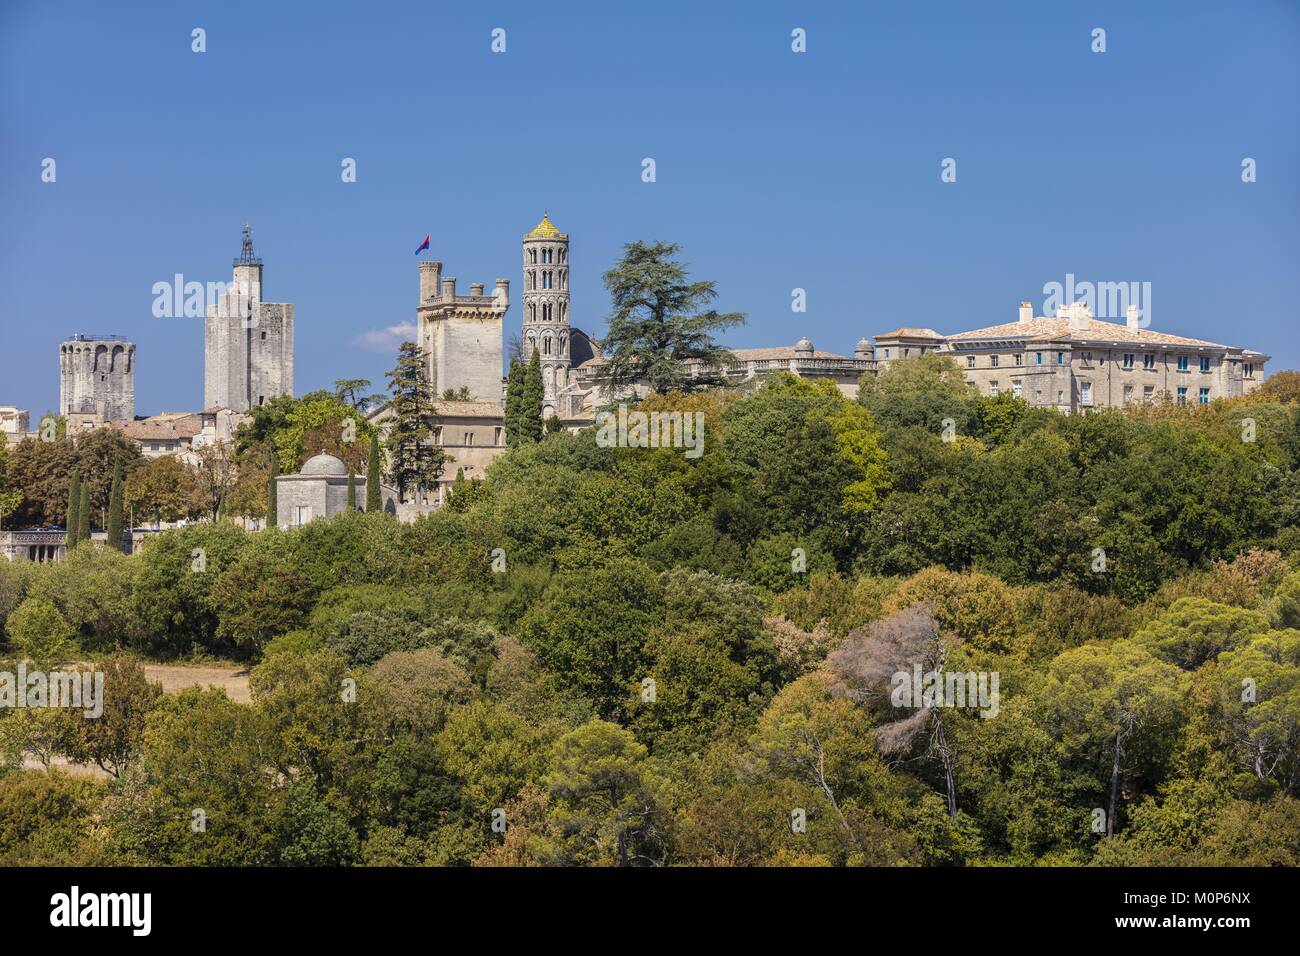 Frankreich, Gard, Pays d'Uzege, Uzès, das herzogliche Schloss als Duche und St. Theodorit Kathedrale mit dem Turm Fenestrelle bekannt Stockfoto